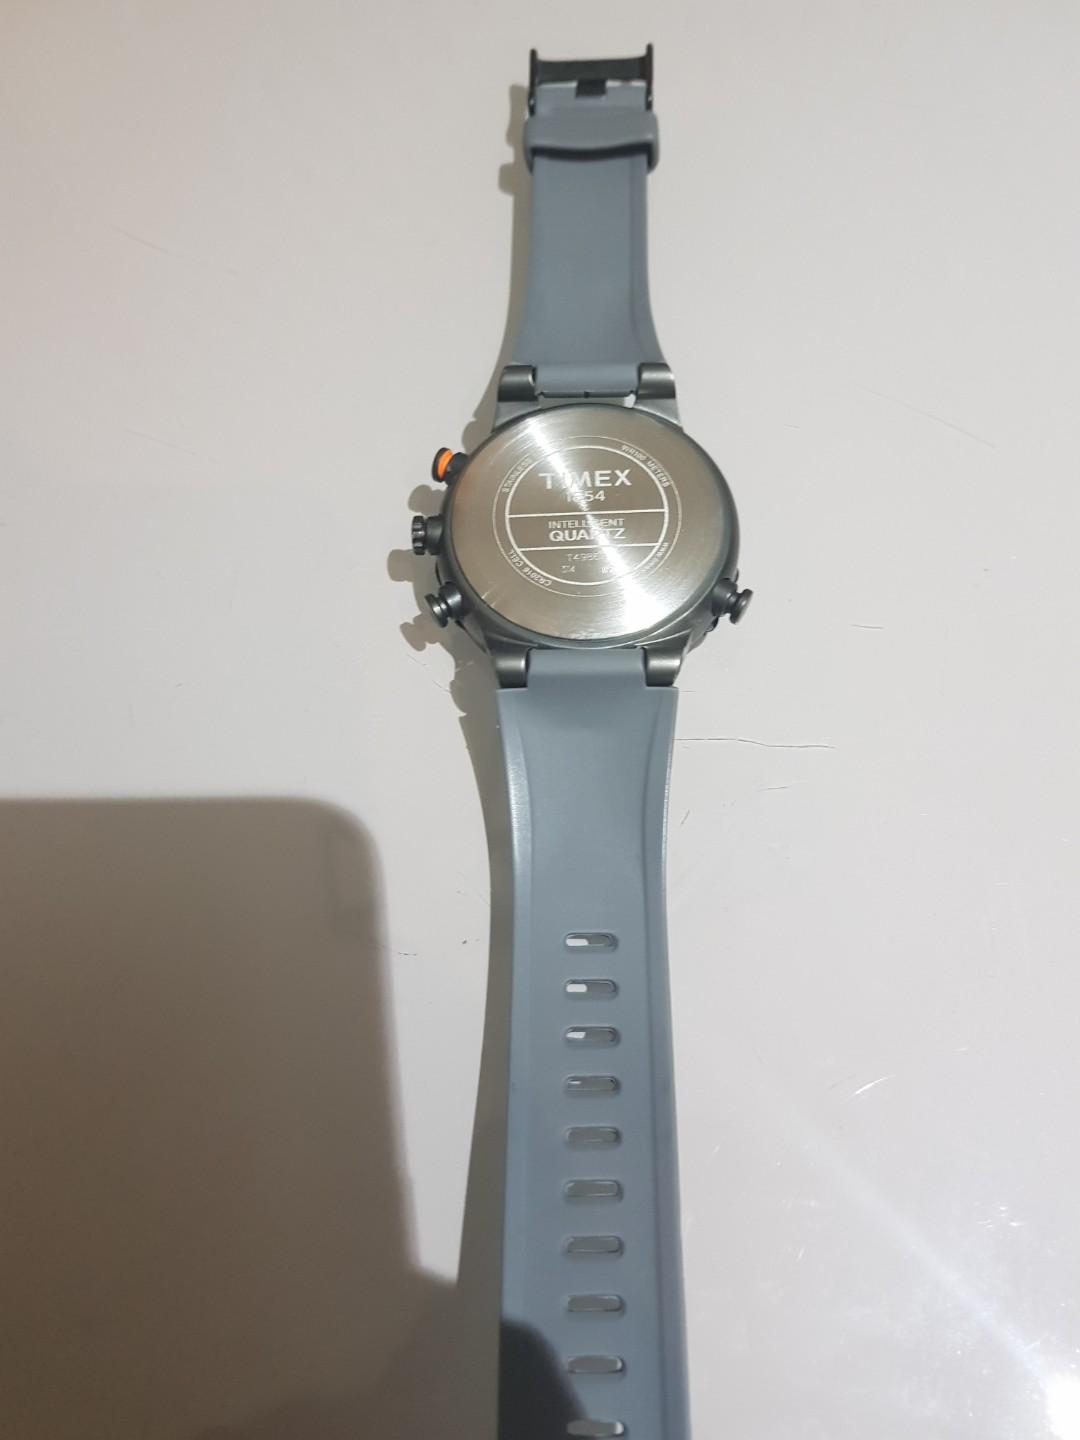 Timex Intelligent Quartz Men S Watch T49860 Mobile Phones Gadgets Wearables Smart